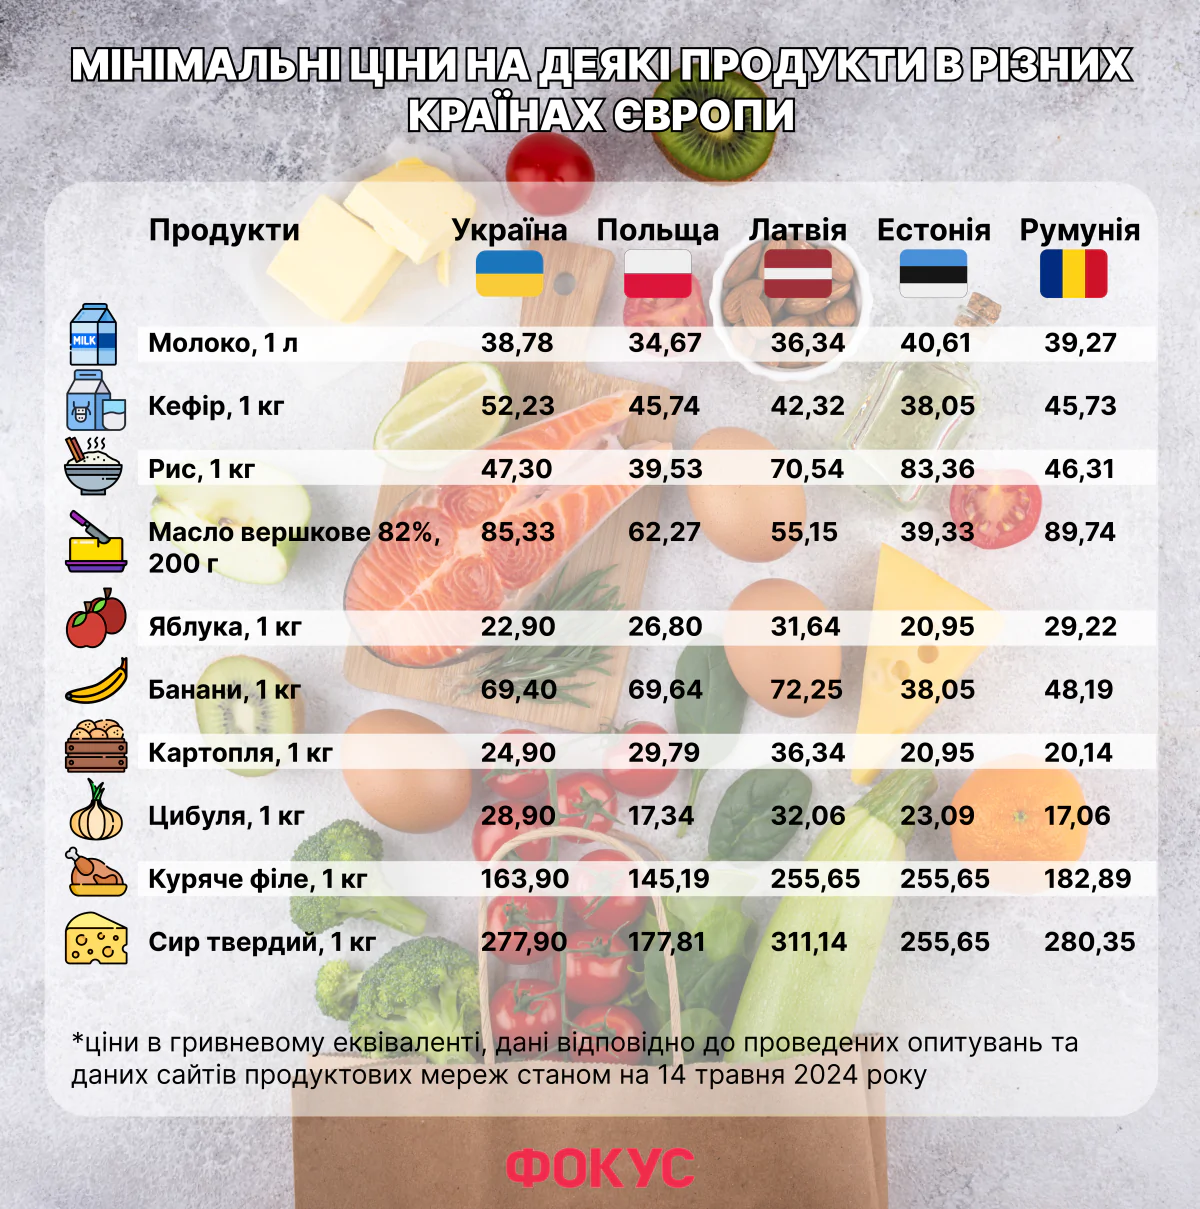 10 продуктов, которые в Украине стоят дороже, чем в Европе